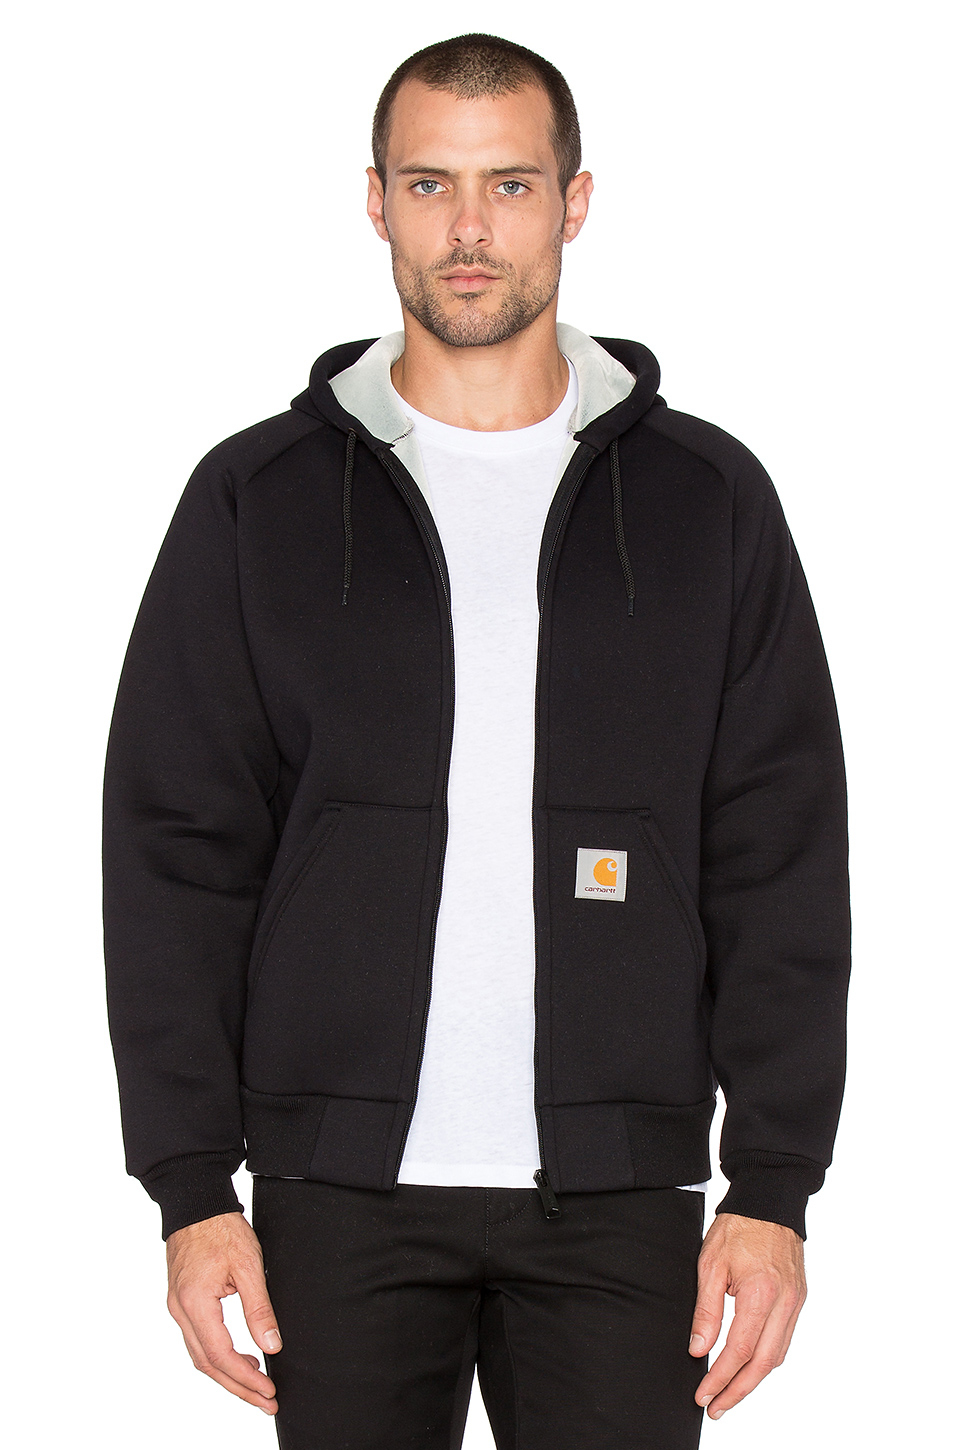 Carhartt WIP Cotton Car-lux Zip Hoodie Jacket in Black & Grey (Black) for  Men - Lyst